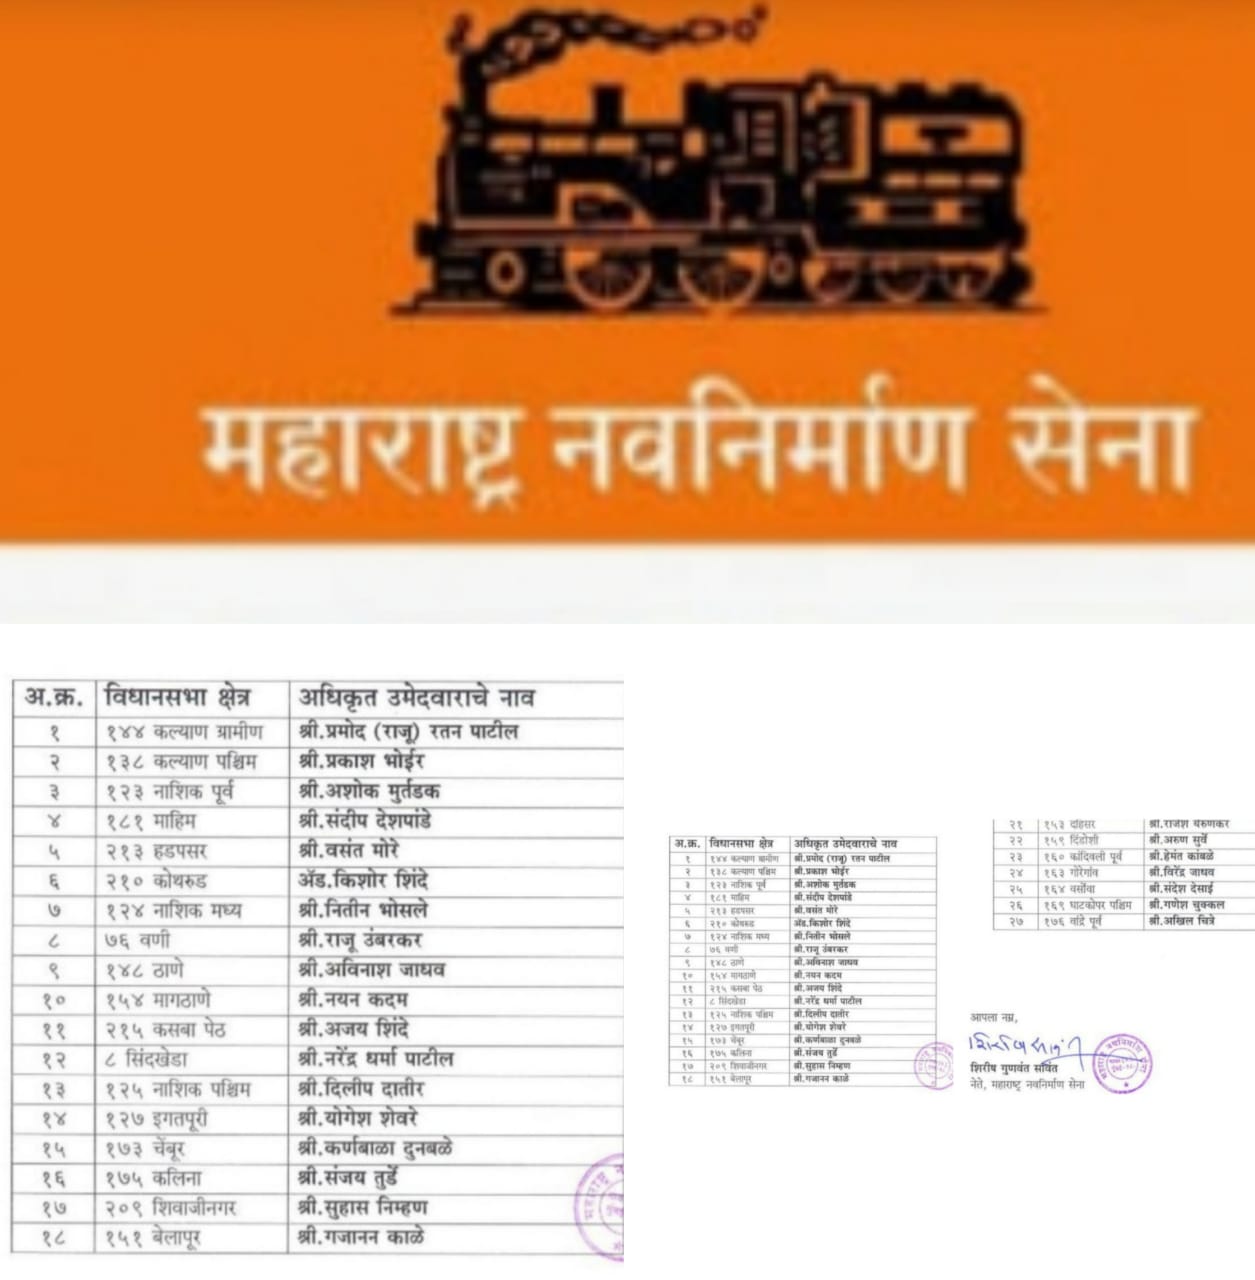 महाराष्ट्र नवनिर्माण सेना ने विधानसभा प्रत्याशियों की सूची की जारी